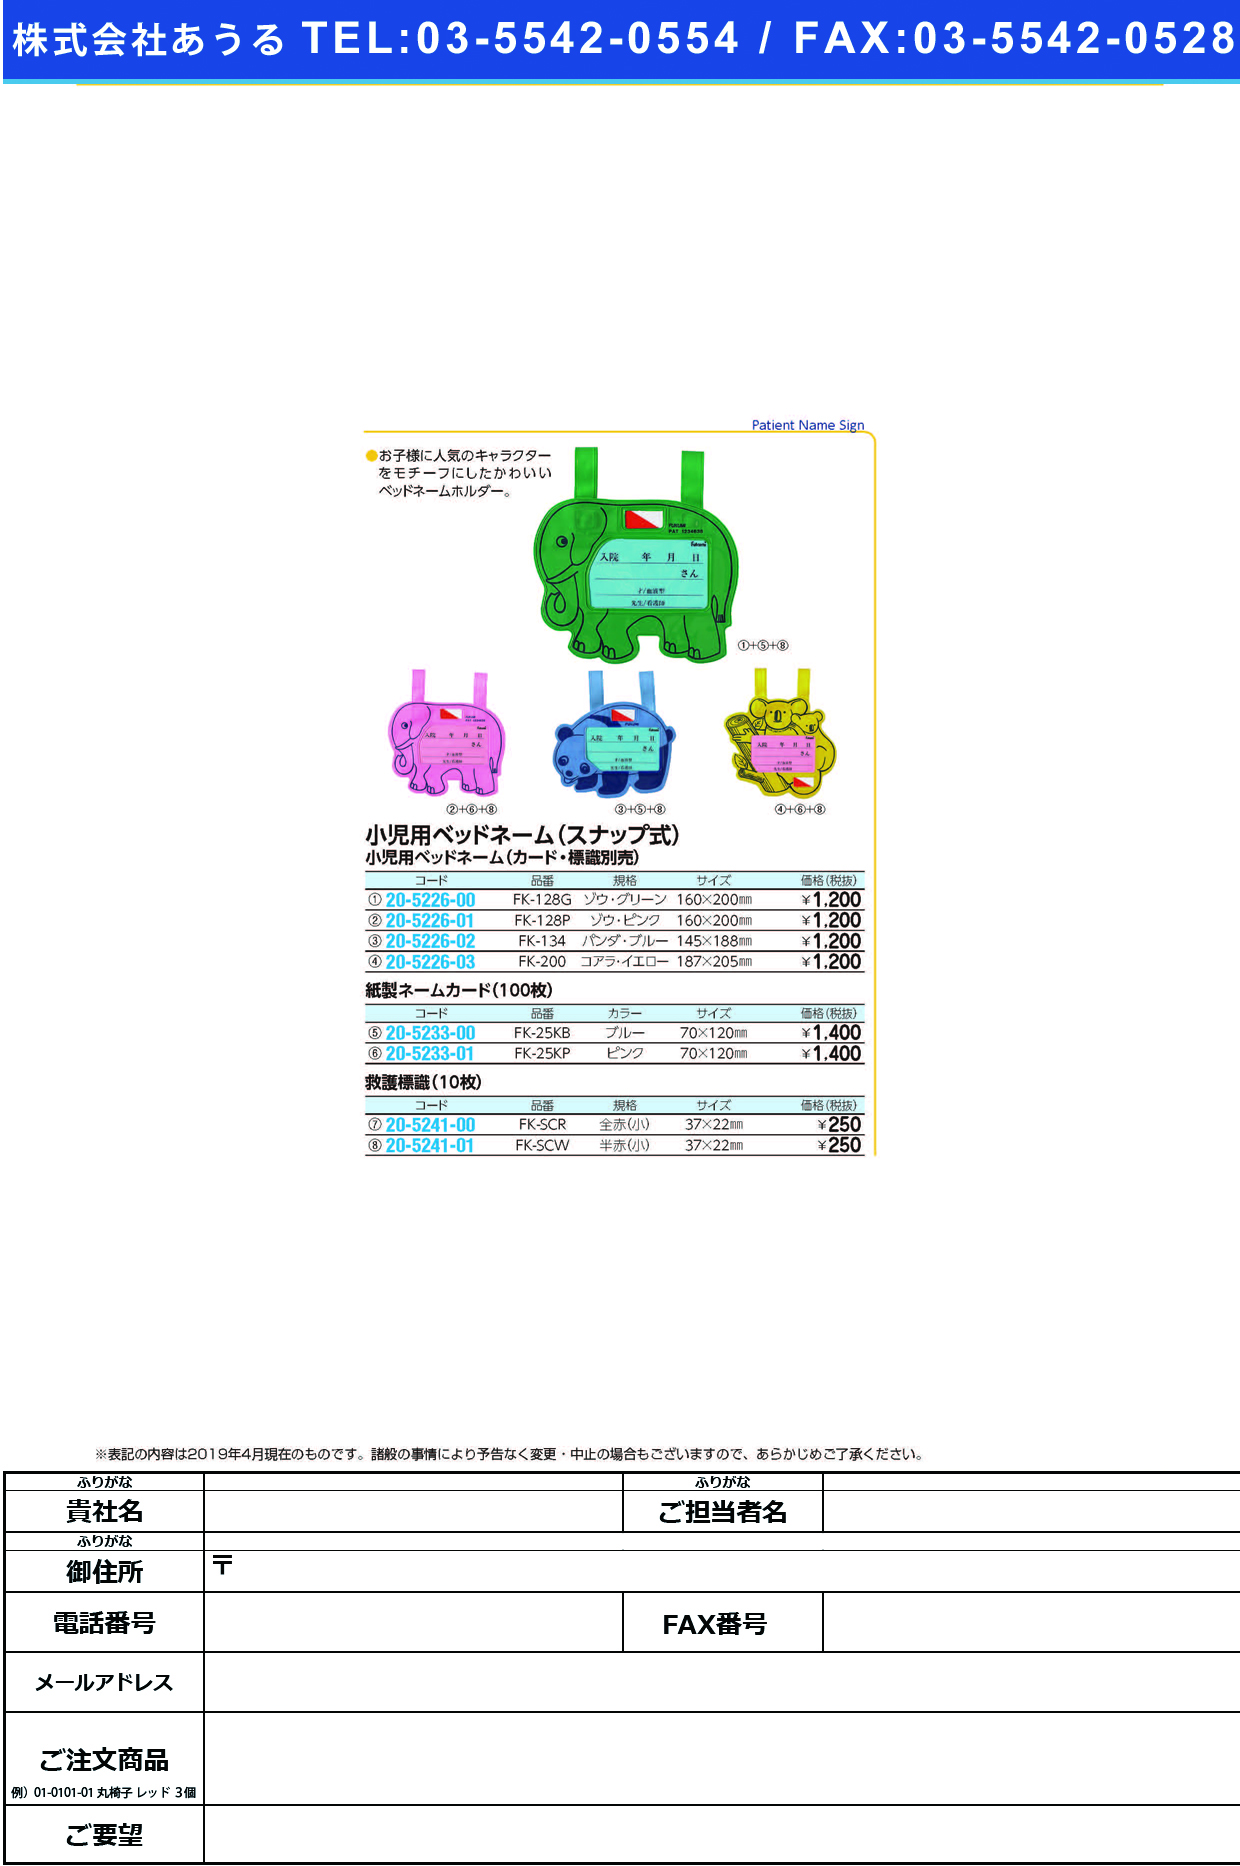 (20-5226-01)ベッドネームホルダー（小児用） FK-128P(ｽﾅｯﾌﾟｼｷ) ﾍﾞｯﾄﾞﾈｰﾑﾎﾙﾀﾞｰ【1枚単位】【2019年カタログ商品】